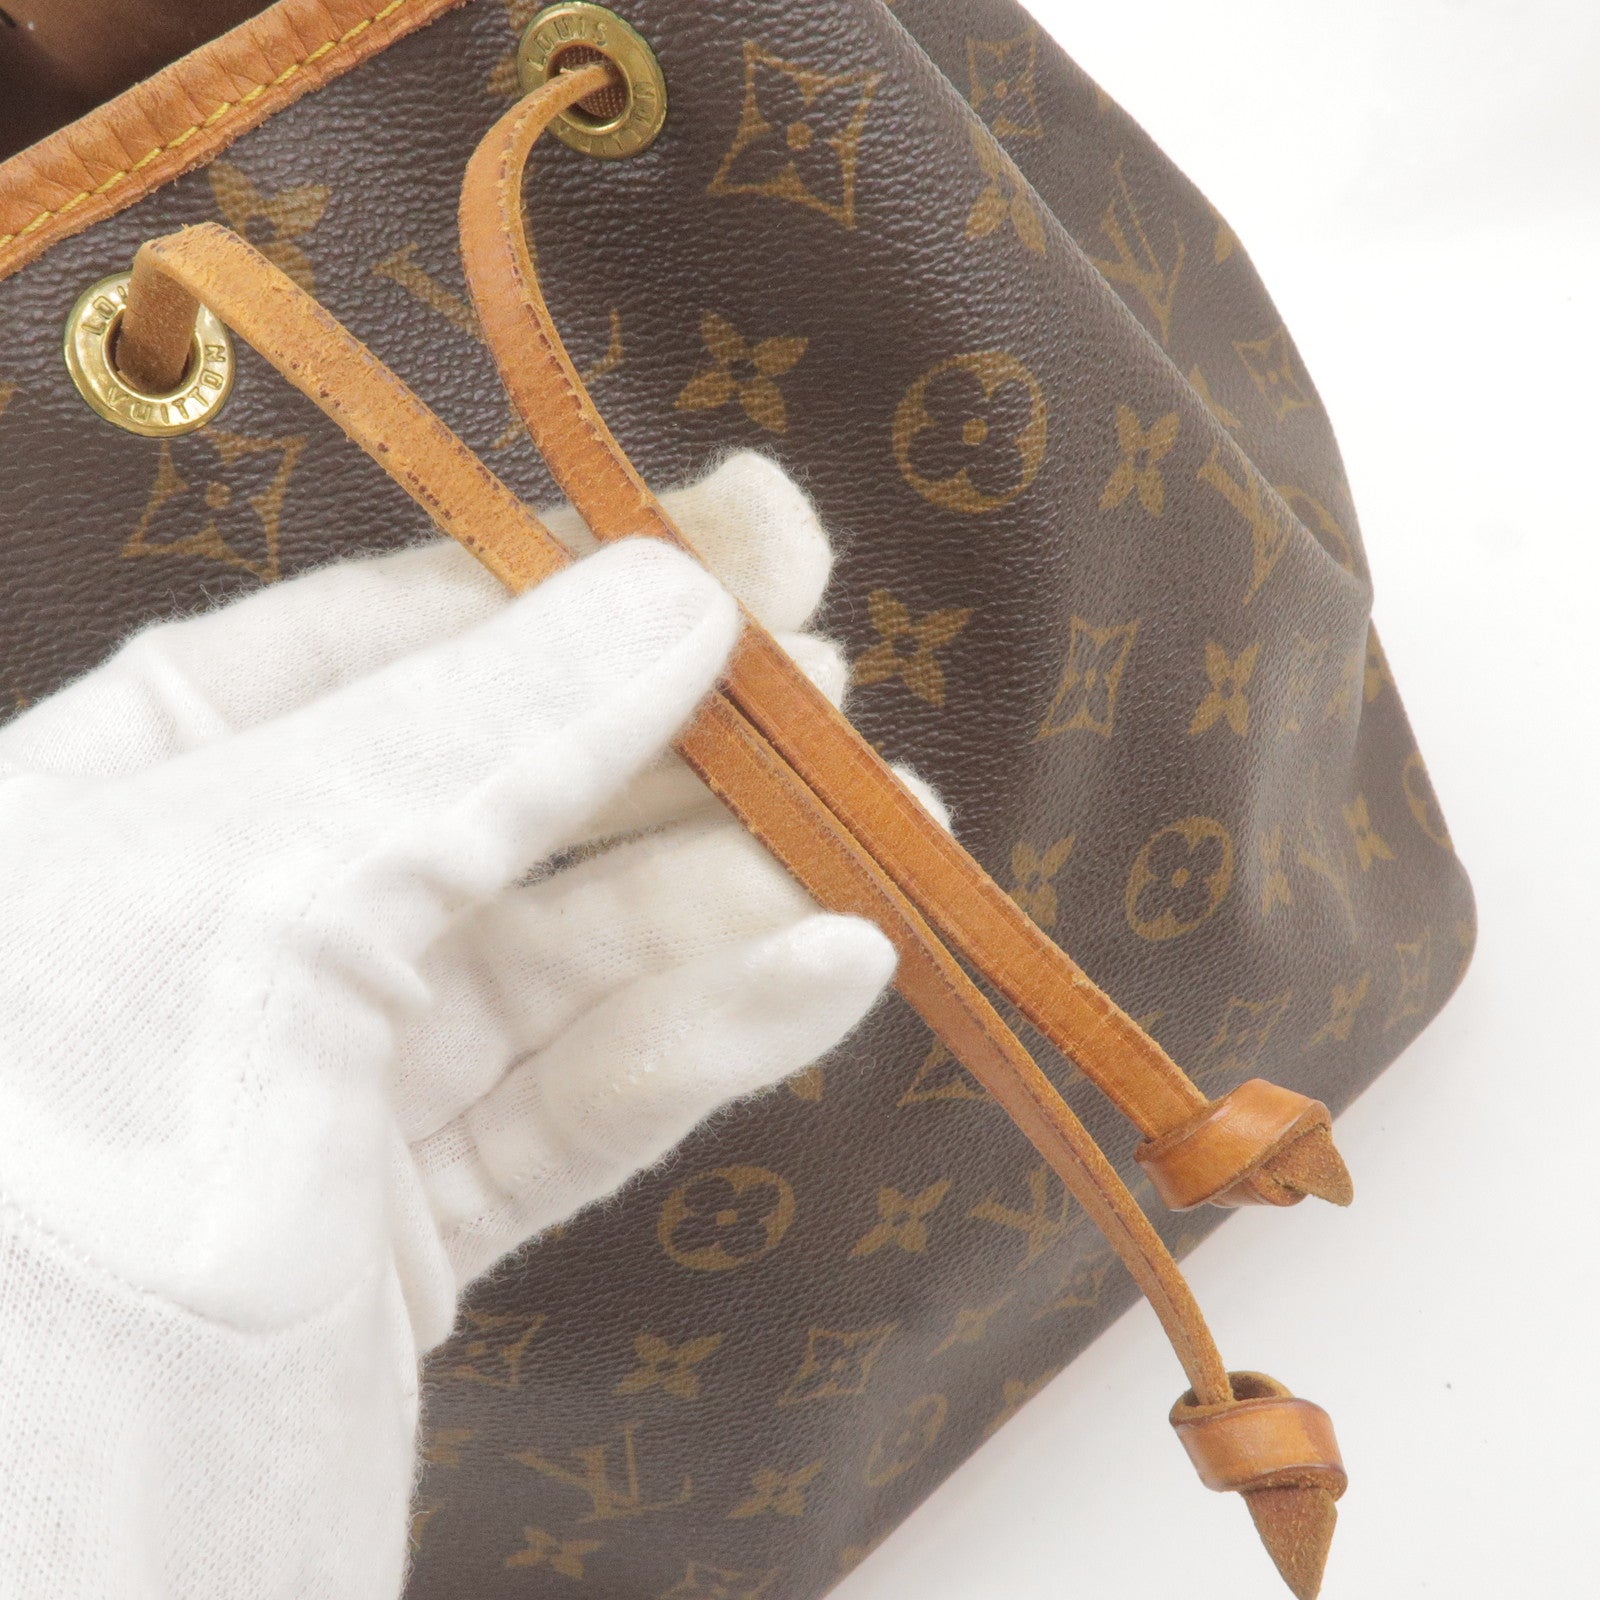 Louis Vuitton Virgil abloh SS19 monogram pochette cless coin purse